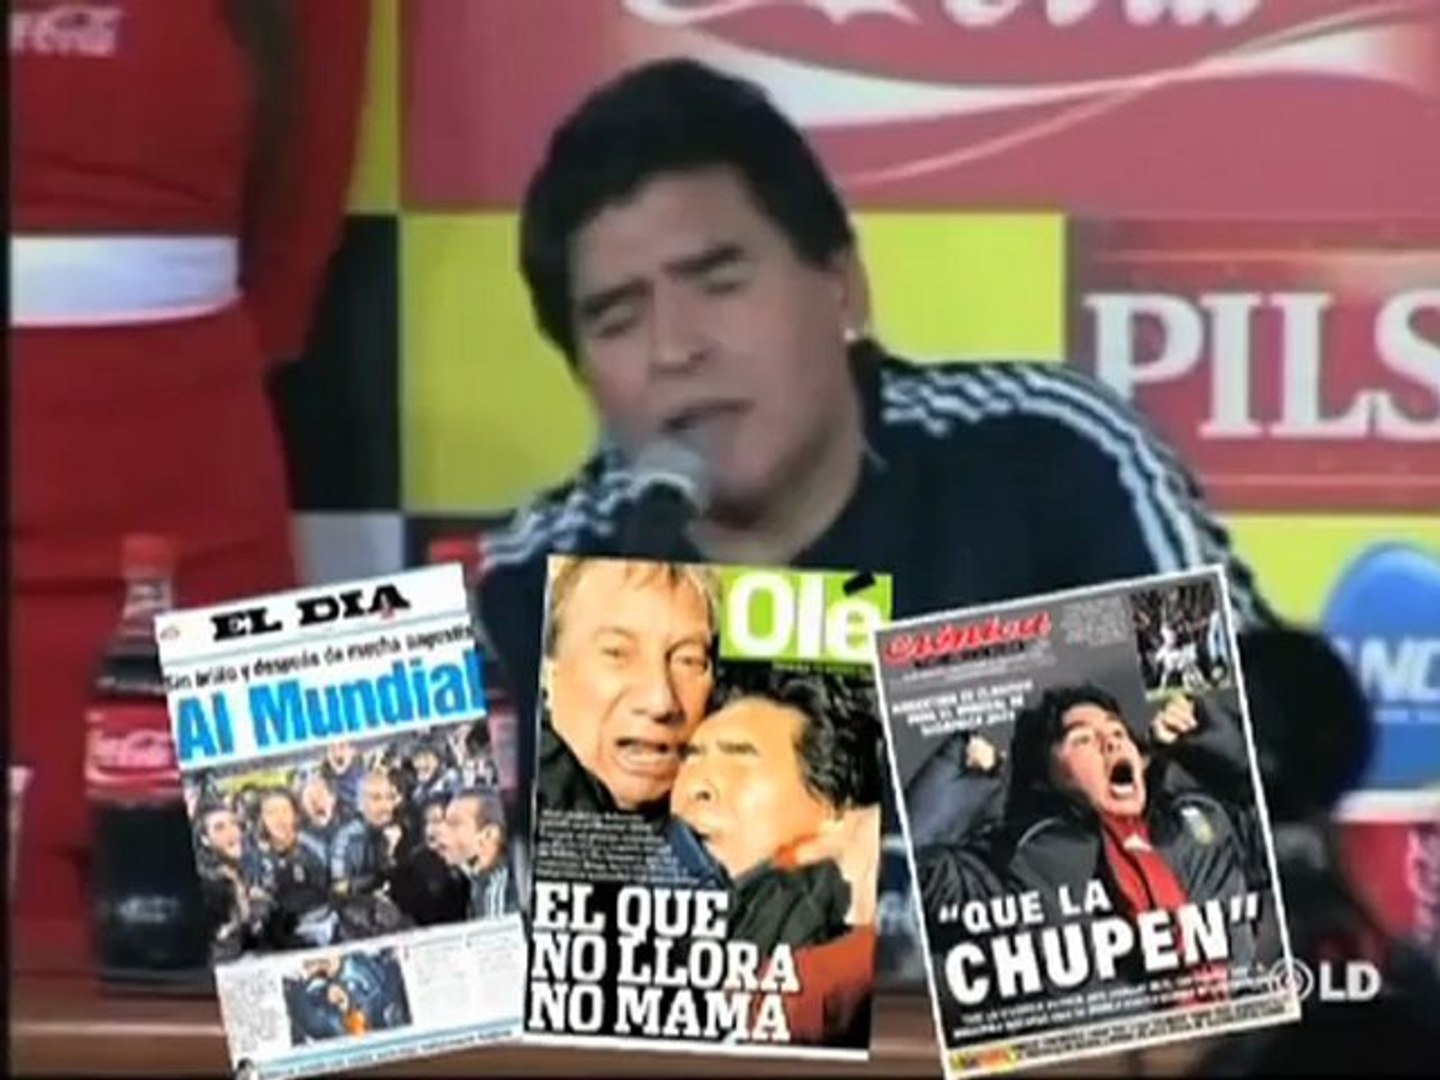 Maradona: "a los que no creyeron, que la chupen" - Vídeo Dailymotion